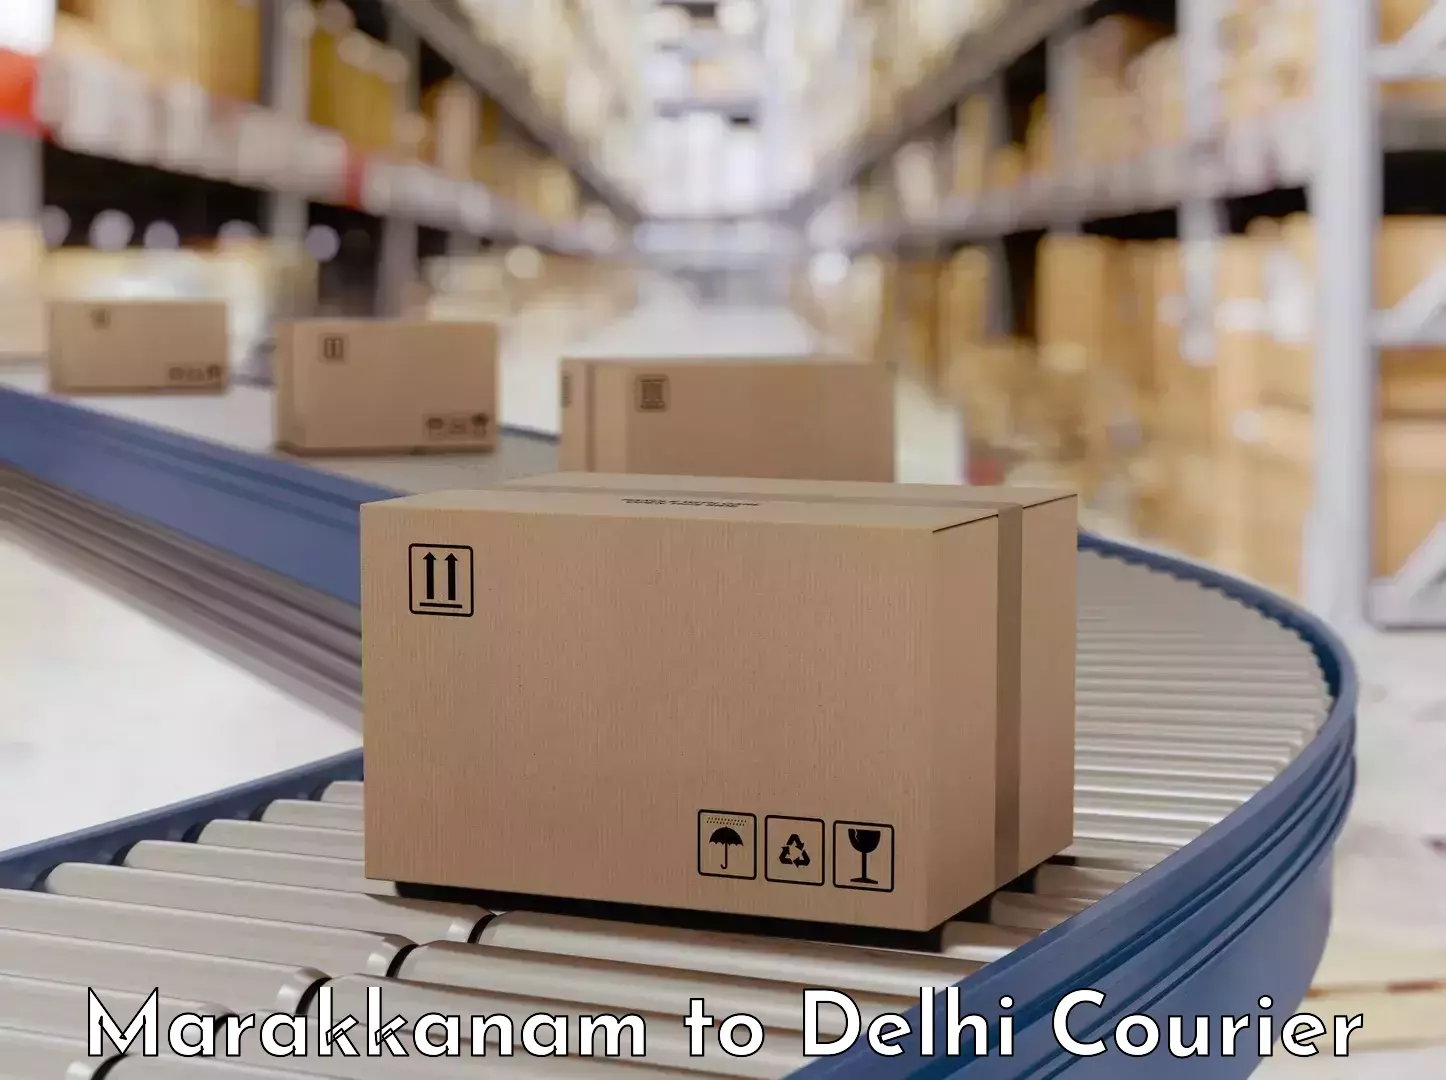 Household goods movers and packers Marakkanam to Jawaharlal Nehru University New Delhi